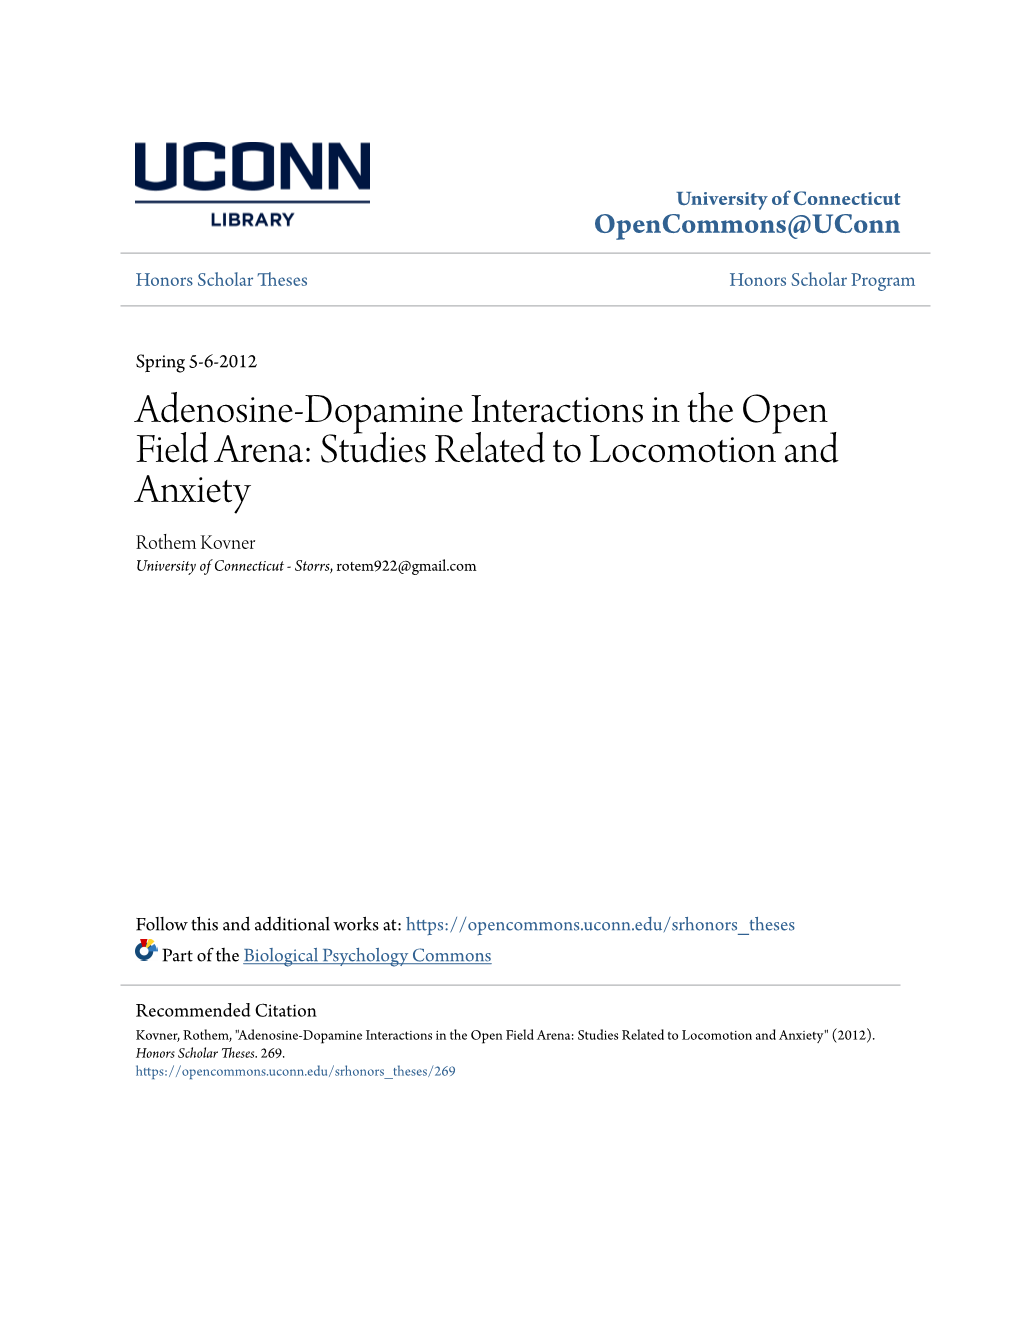 Adenosine-Dopamine Interactions in the Open Field Arena: Studies